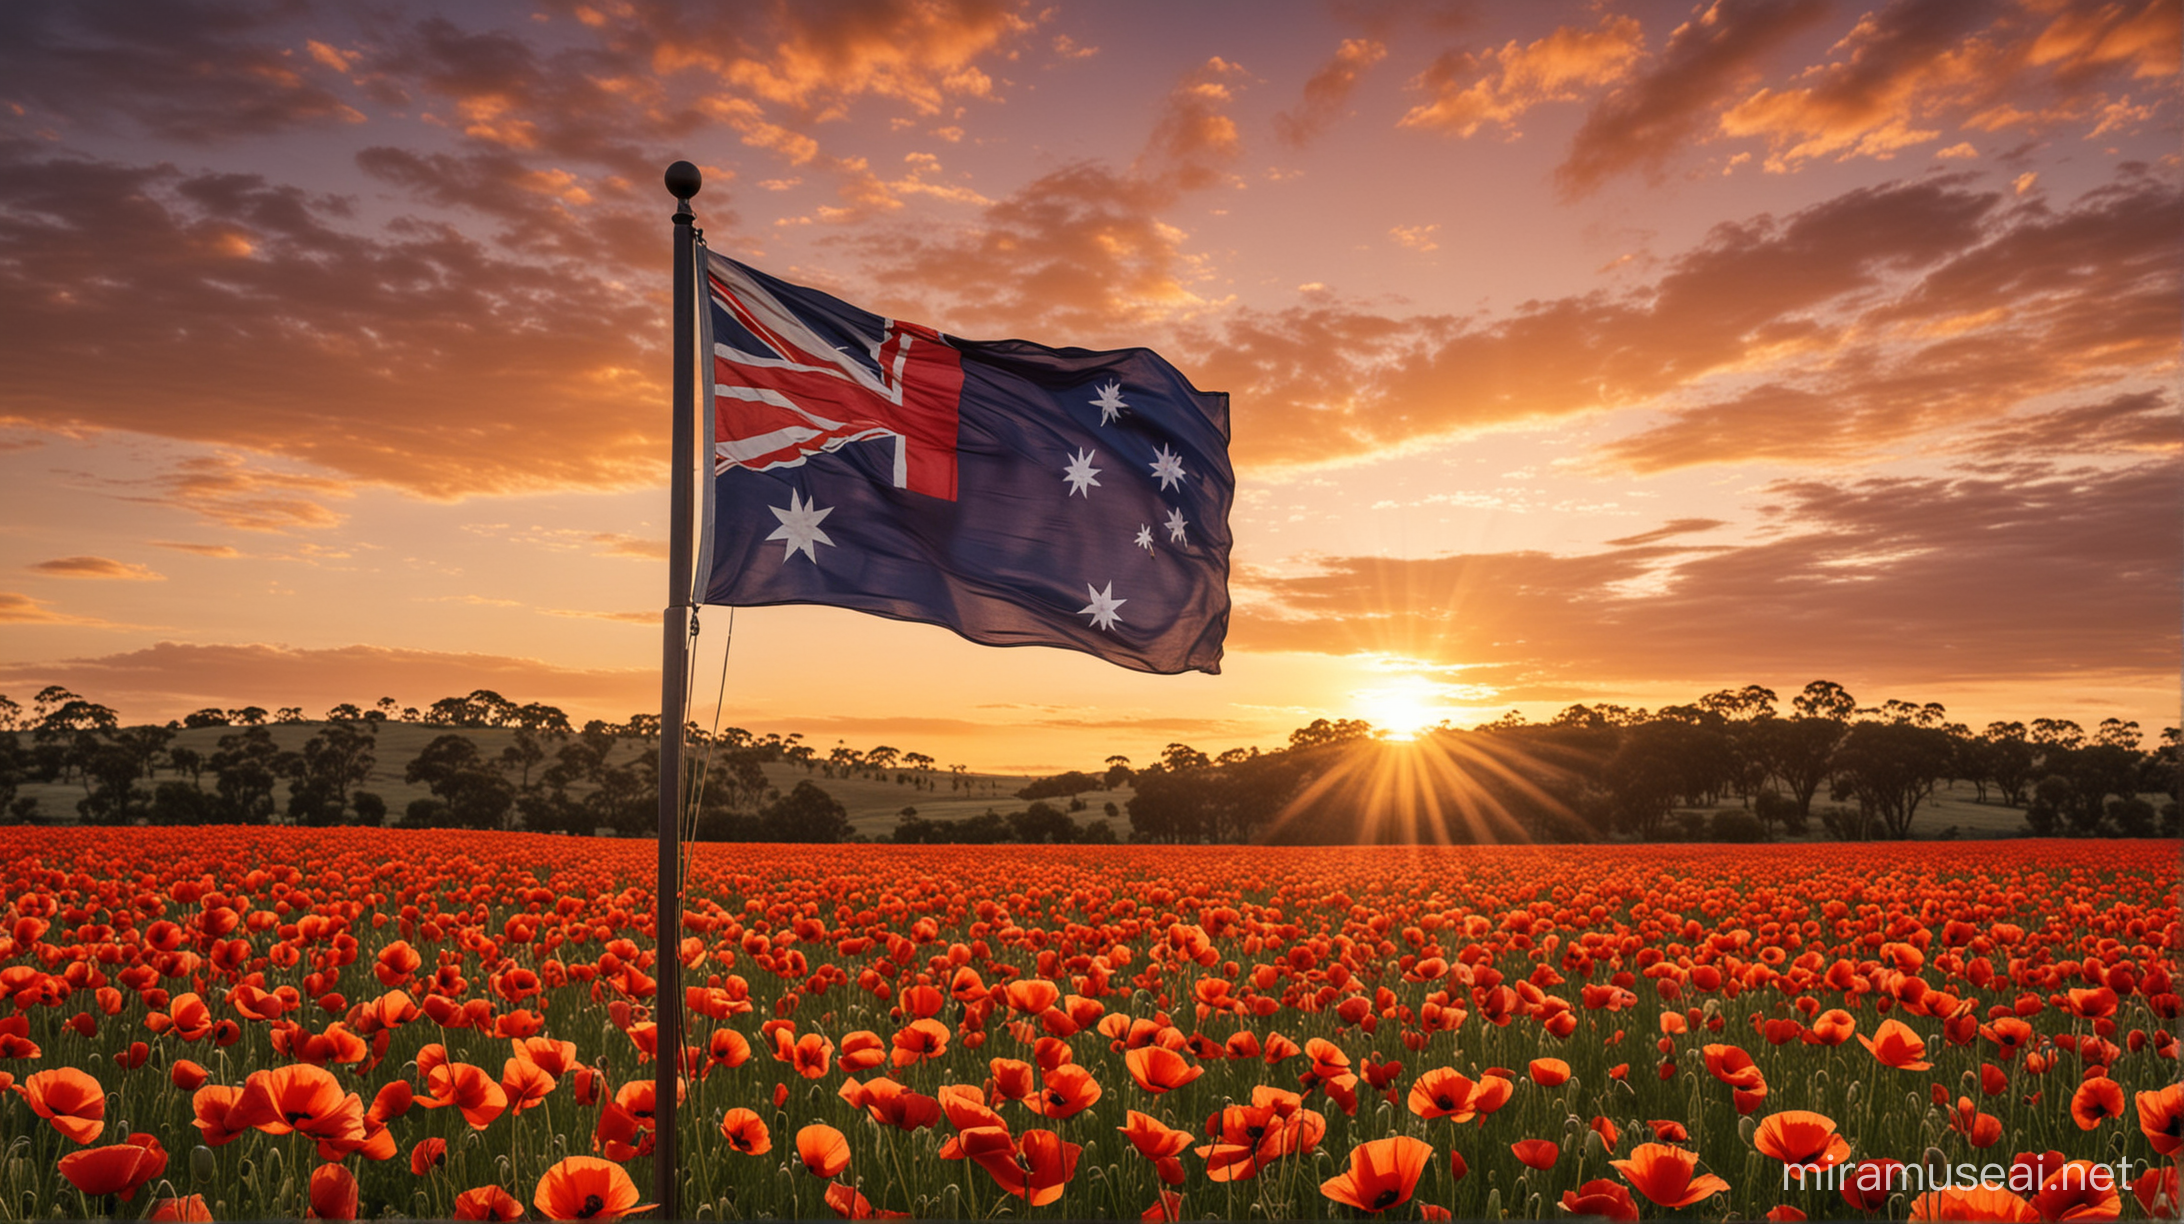 Australian Flag Flying Over Sunset Poppy Field